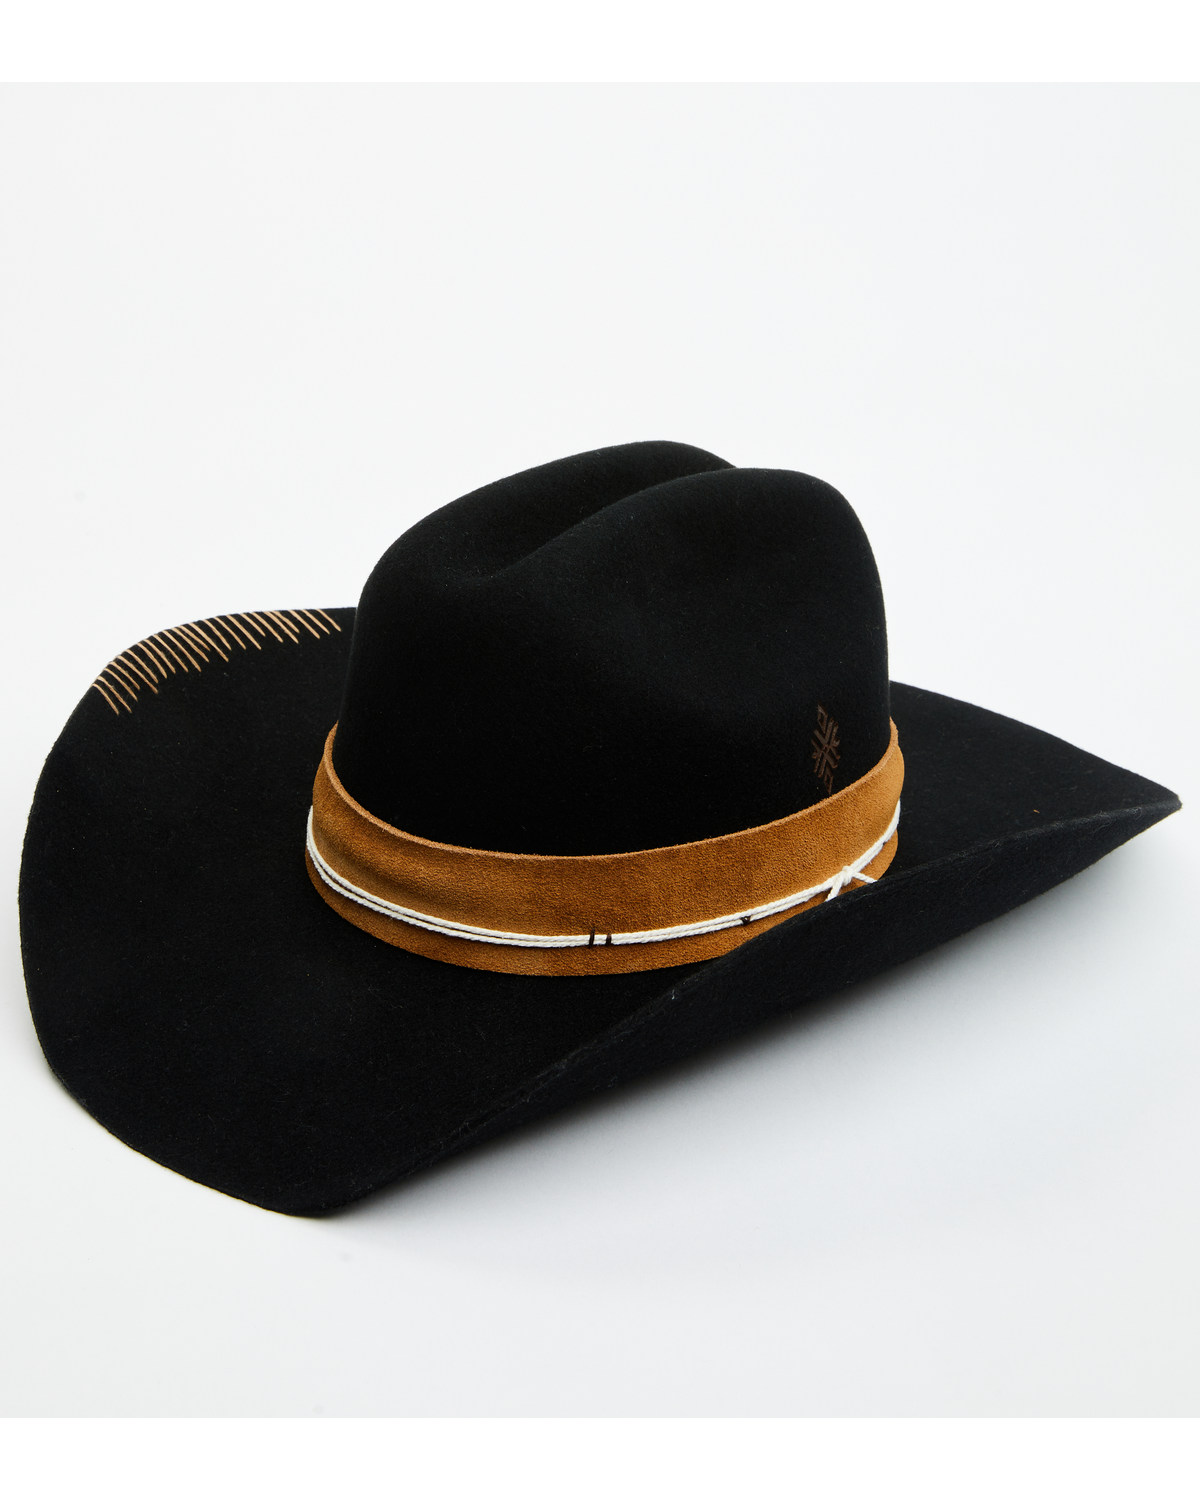 Idyllwind Women's Terranova Felt Cowboy Hat